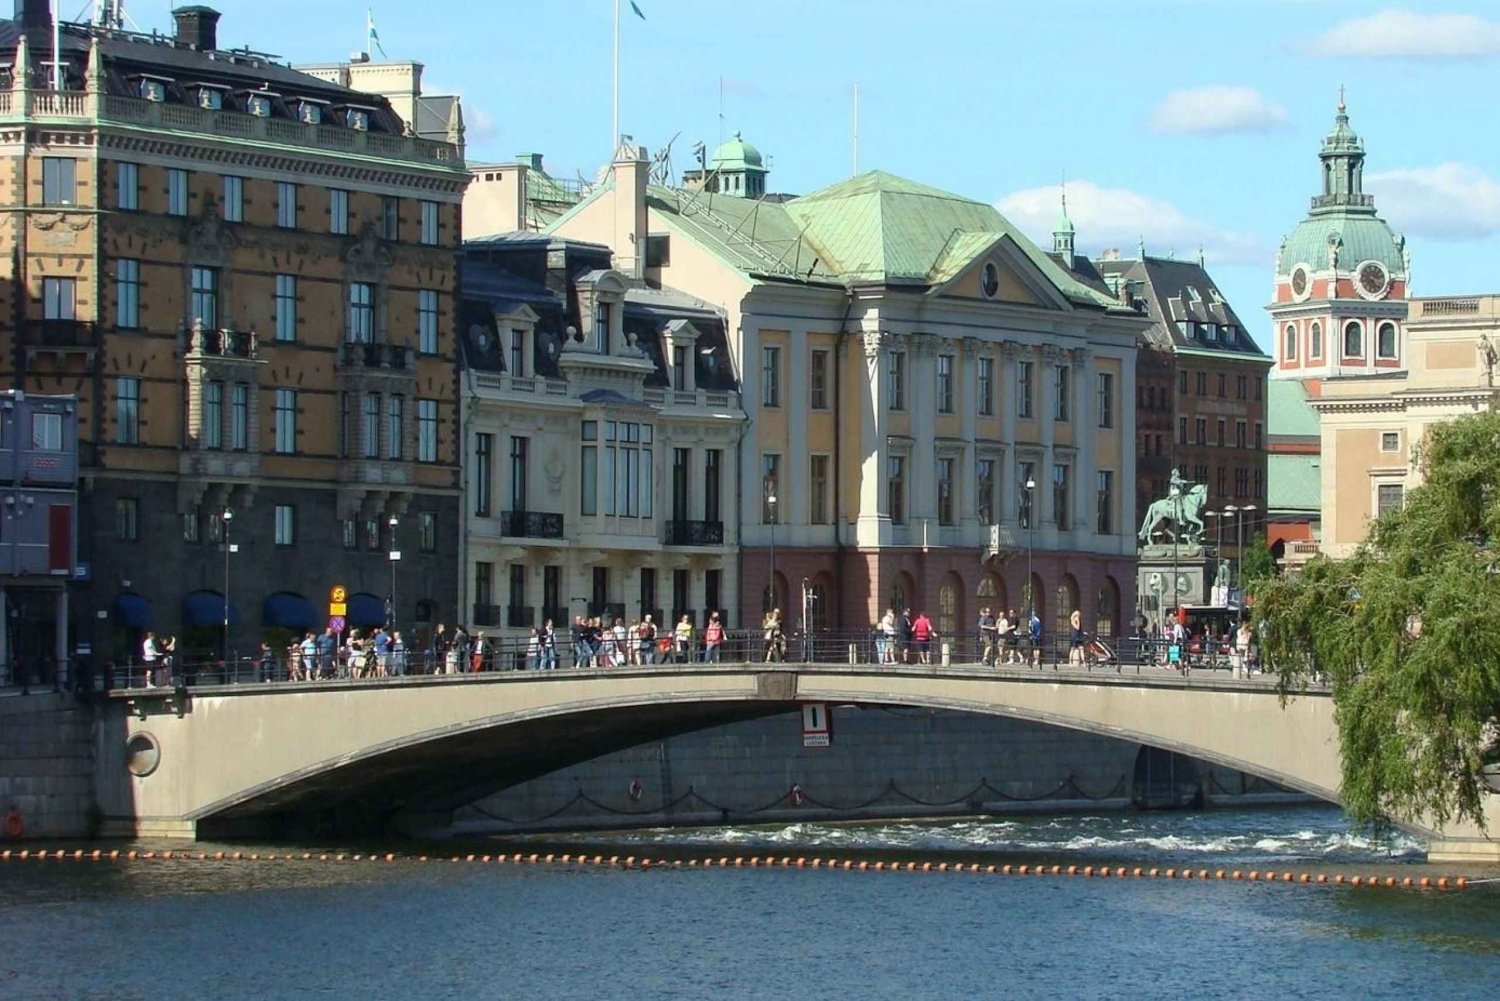 Sztokholm: piękno na wodzie – spacer po Starym Mieście i rejs statkiem